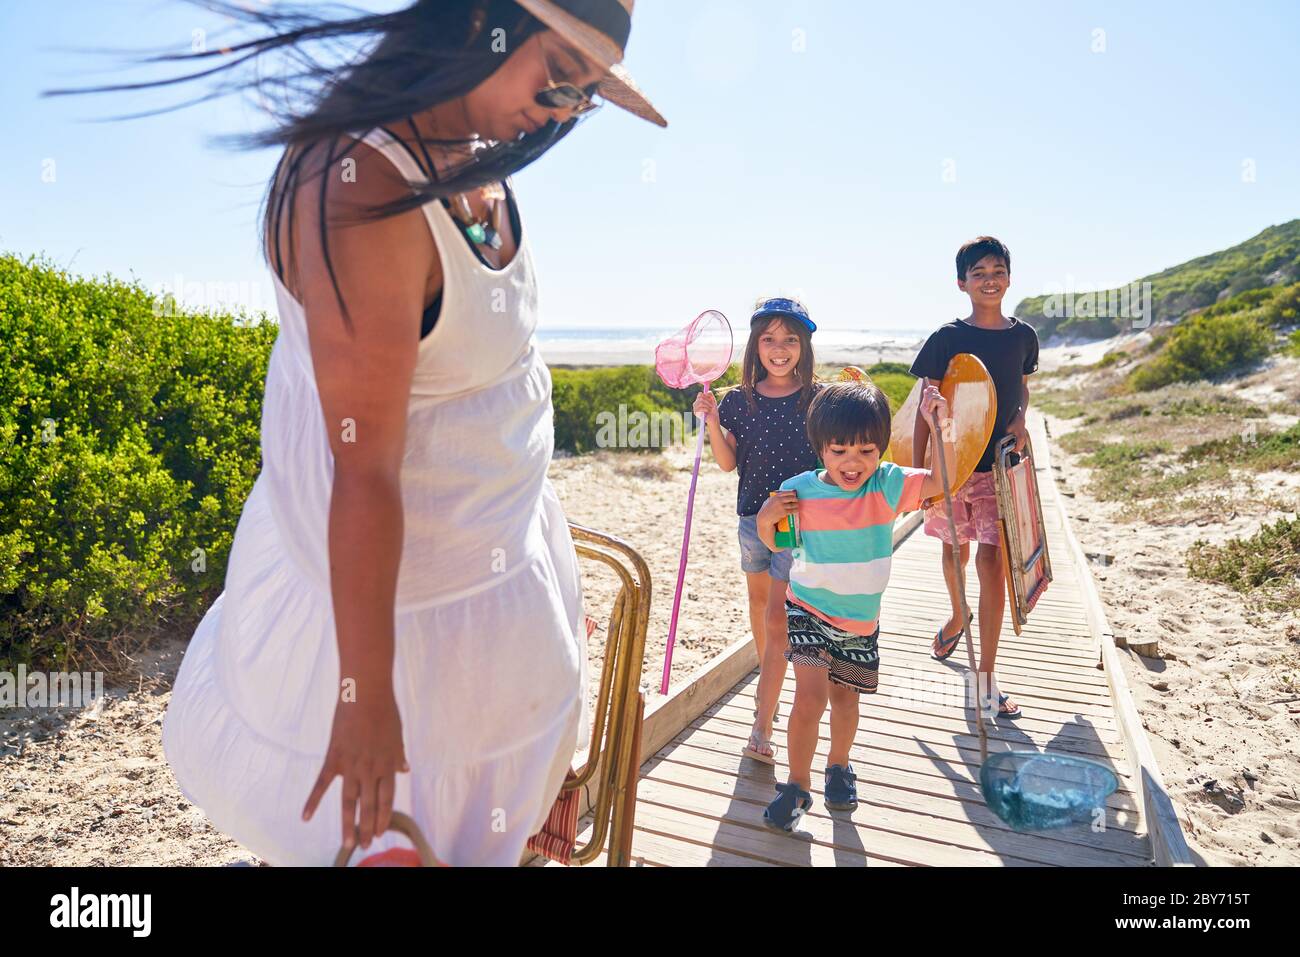 Happy family on sunny beach boardwalk Stock Photo